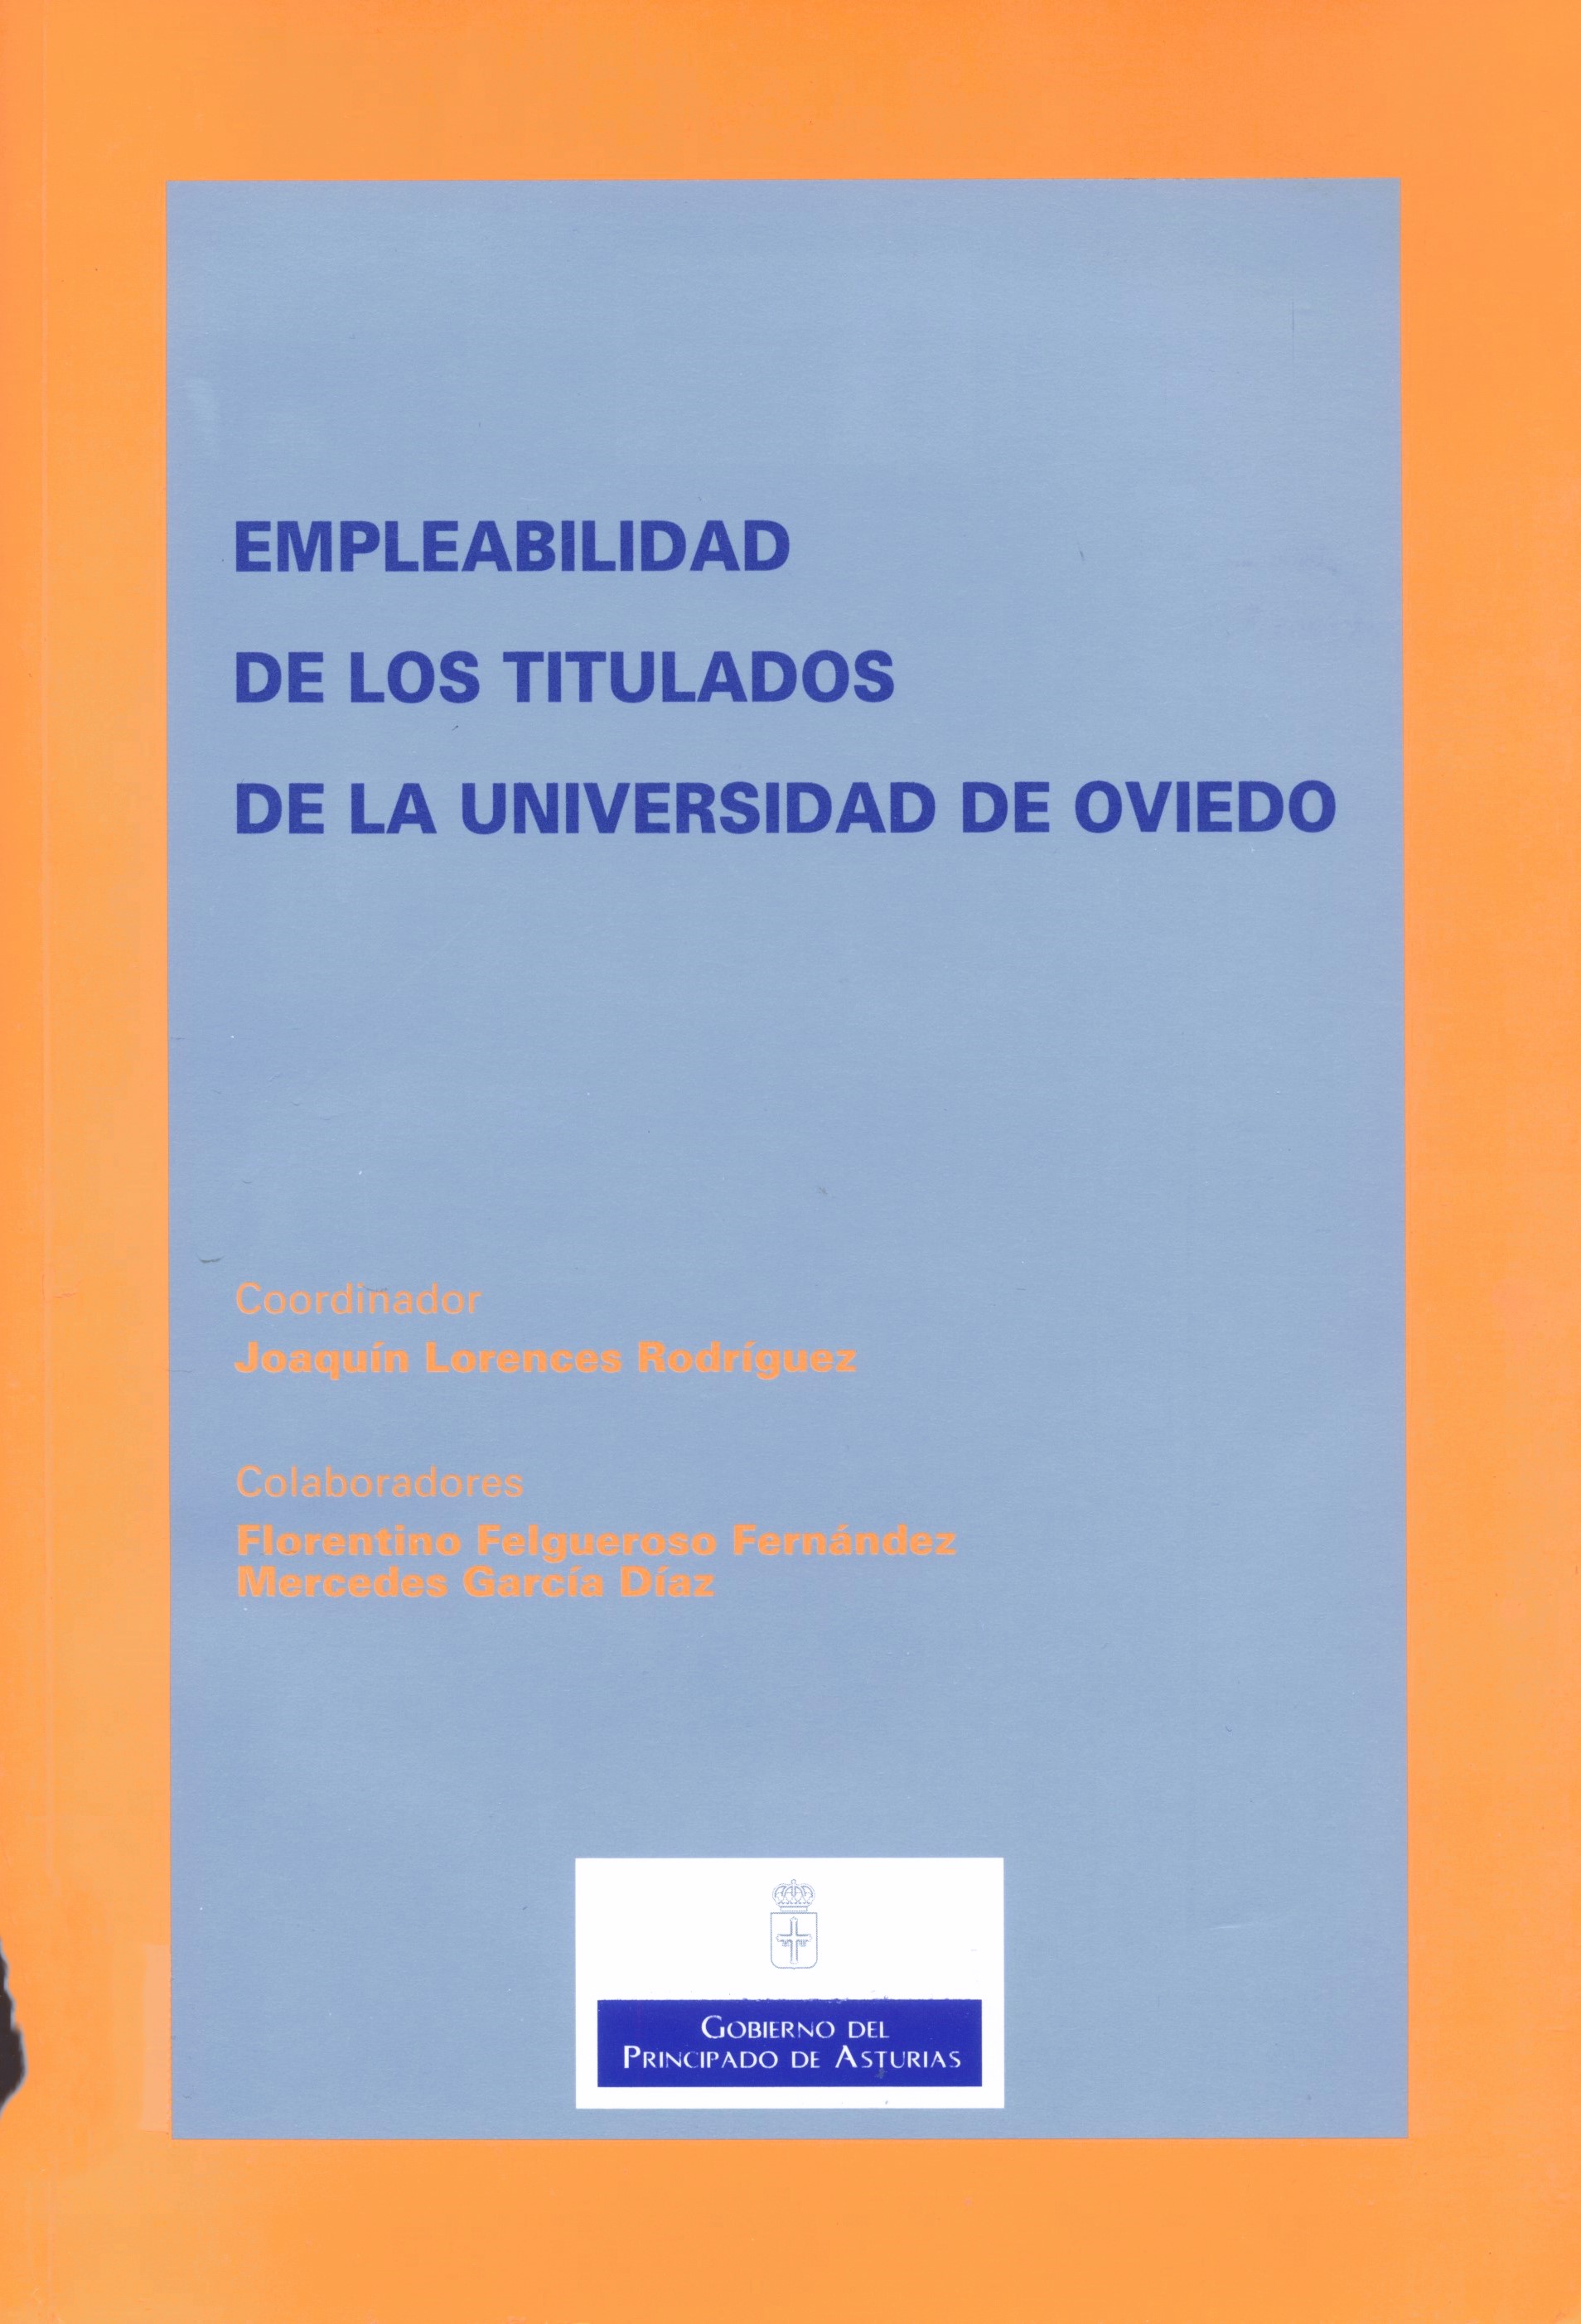 Imagen de portada del libro Empleabilidad de los titulados de la Universidad de Oviedo